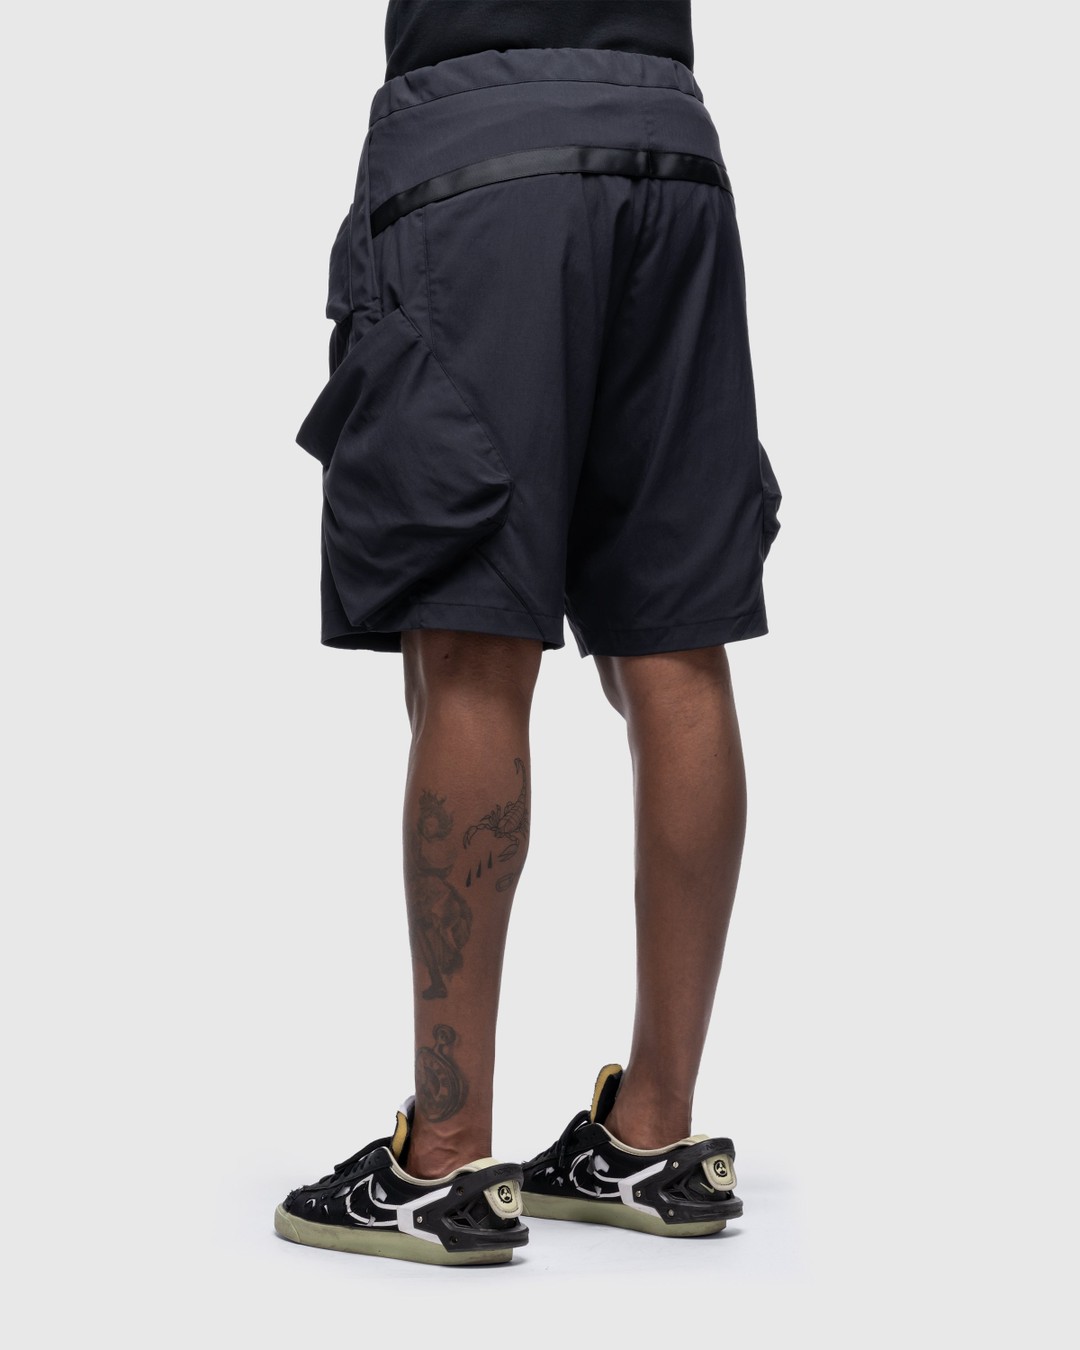 ACRONYM – SP29-M Nylon Stretch BDU Shorts Black | Highsnobiety Shop